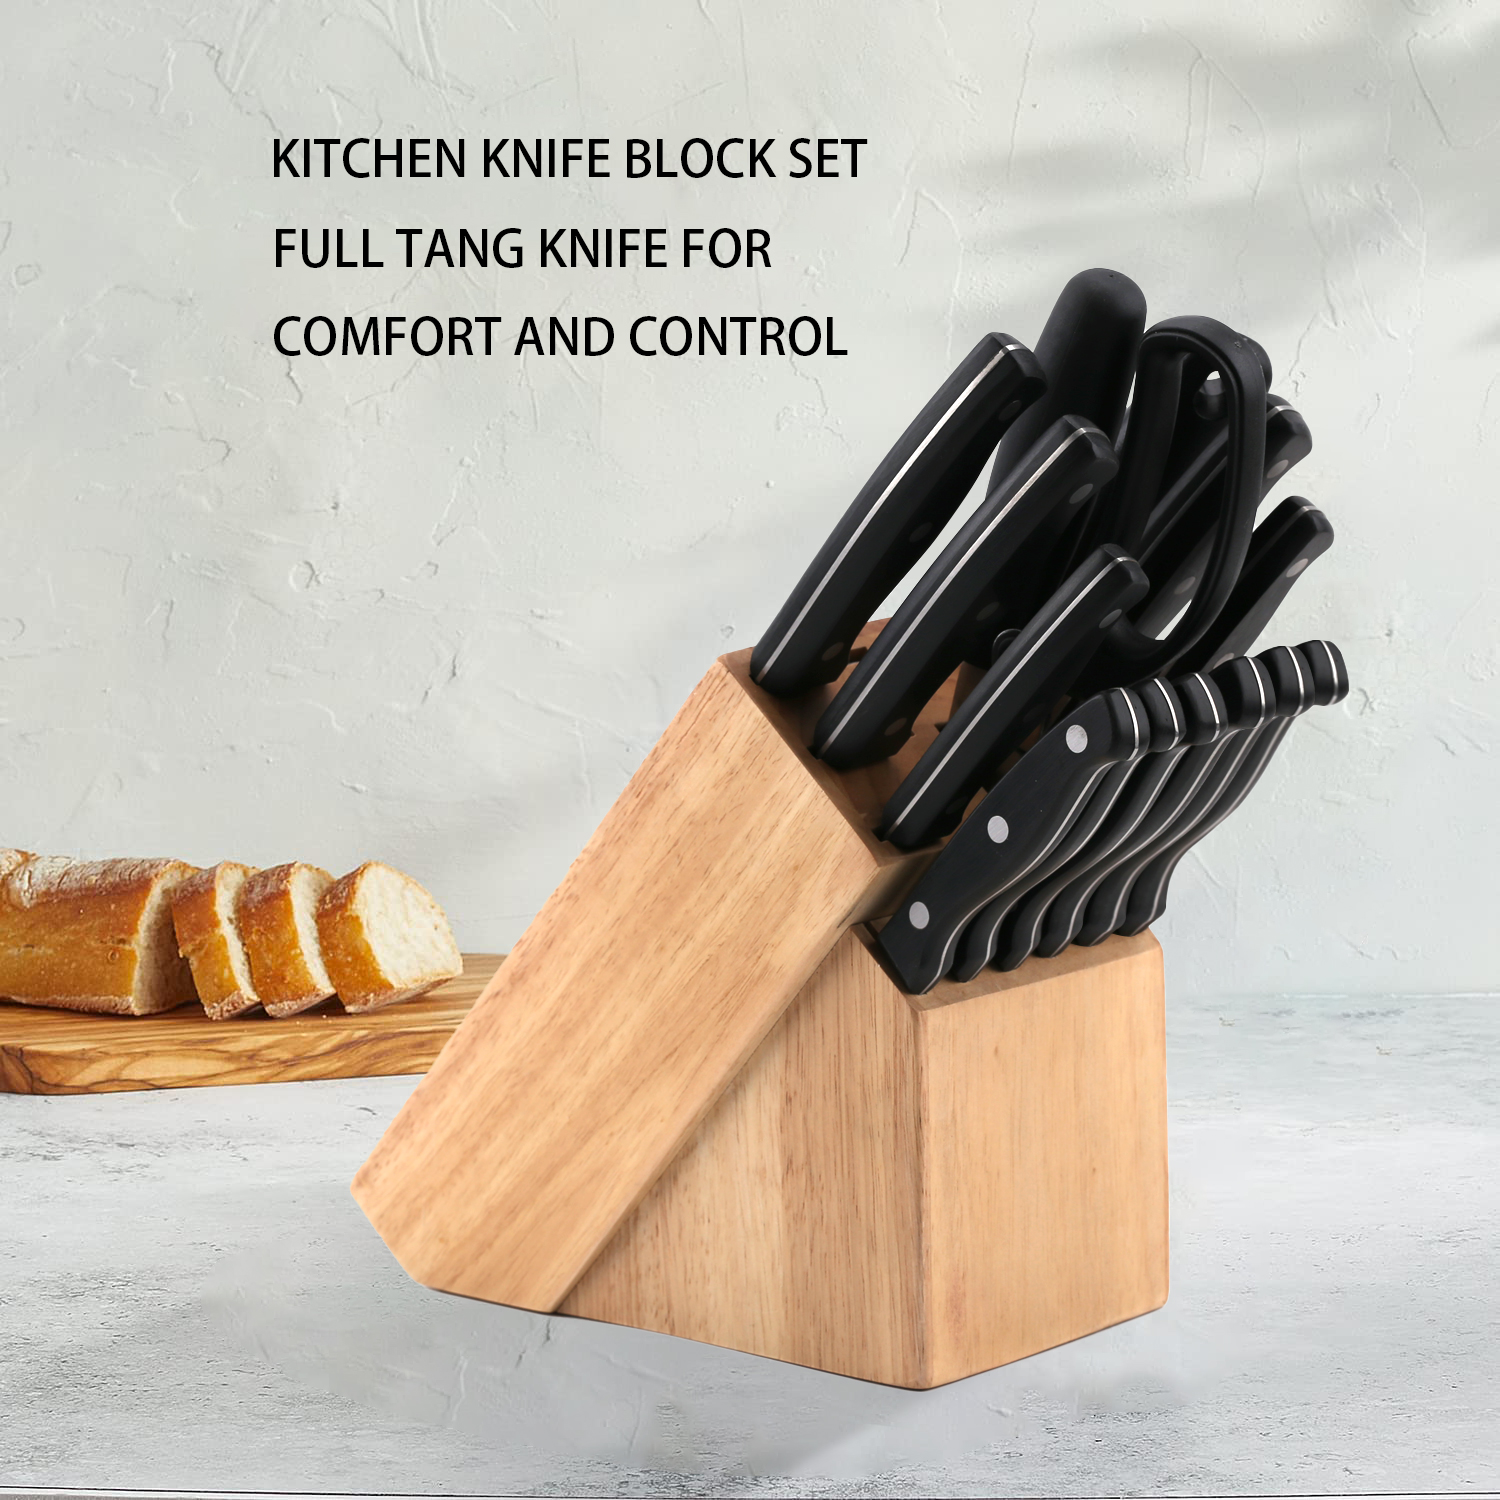 Ј104-14-Пиеце Премиум сет кухињских ножева, нерђајући челик са високим садржајем угљеника-ЗКС | кухињски нож, кухињски алати, силиконски калуп за торте, даска за сечење, сетови алата за печење, куварски нож, нож за одреске, нож за сечење, помоћни нож, нож за чишћење, блок ножа, постоље за нож, сантоку нож, нож за малишане, пластични нож за ножеве, Нож, Шарени нож, Нож од нерђајућег челика, Отварач за конзерве, Отварач за флаше, Цједило за чај, Рендач, Мутилица за јаја, Најлонски кухињски алат, Силиконски кухињски алат, Резач за колаче, Сет ножева за кухање, Оштрилица за ножеве, Љушталица, Нож за колаче, Нож за кафу, Нож, силиконска лопатица, силиконска кашика, хватаљка за храну, ковани нож, кухињске маказе, ножеви за печење колача, дечији ножеви за кување, нож за резбарење